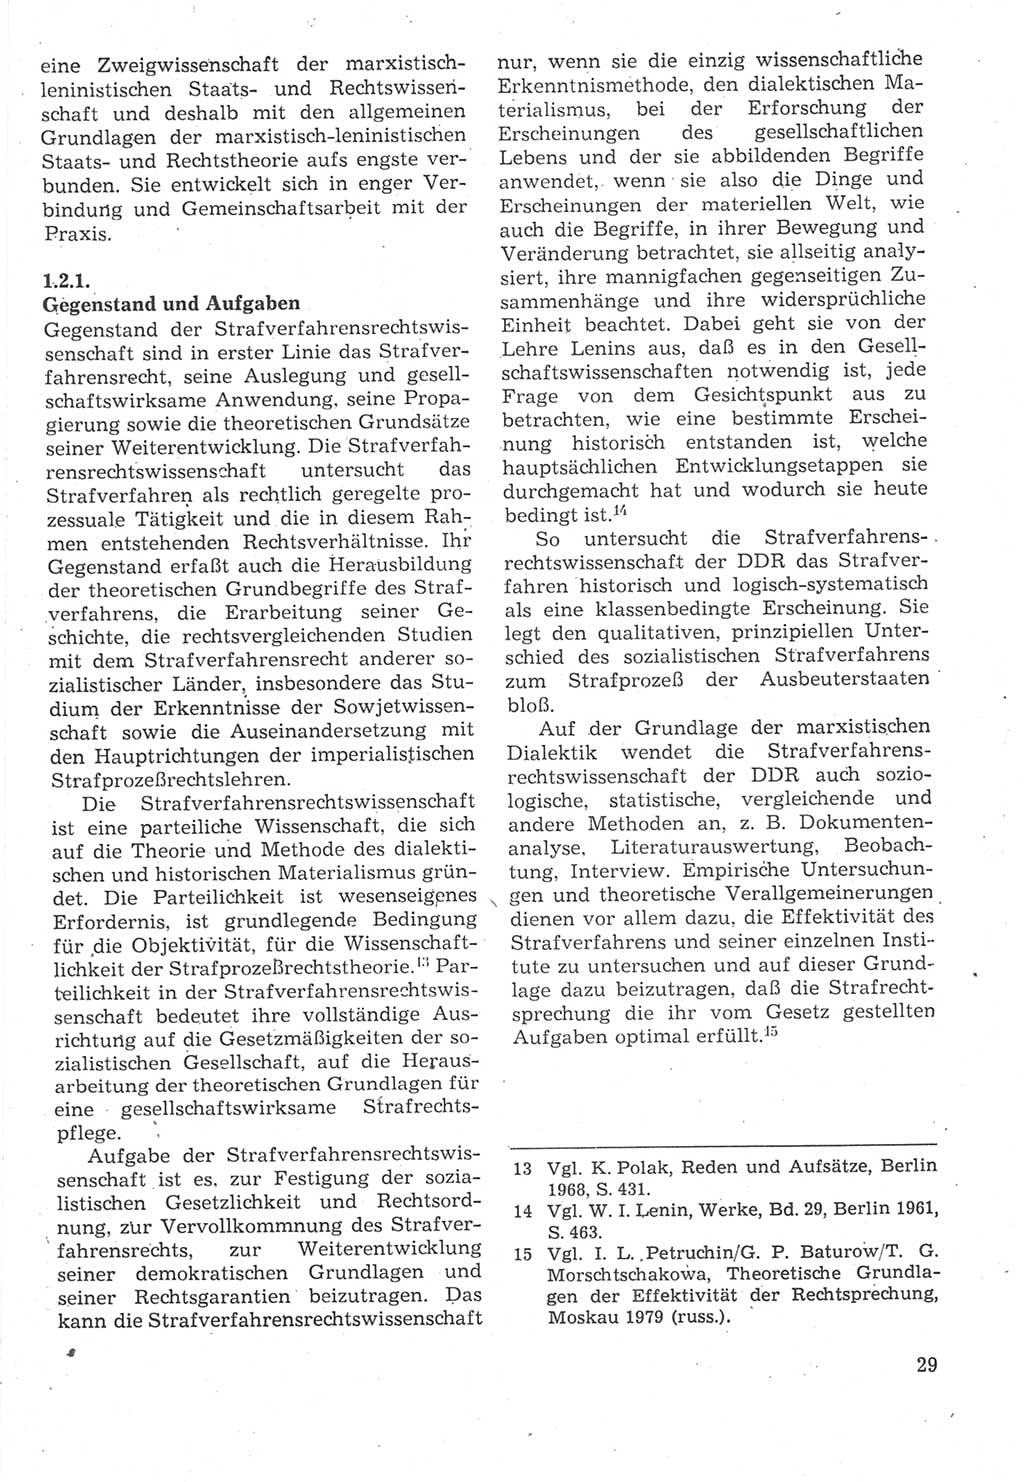 Strafverfahrensrecht [Deutsche Demokratische Republik (DDR)], Lehrbuch 1987, Seite 29 (Strafverf.-R. DDR Lb. 1987, S. 29)